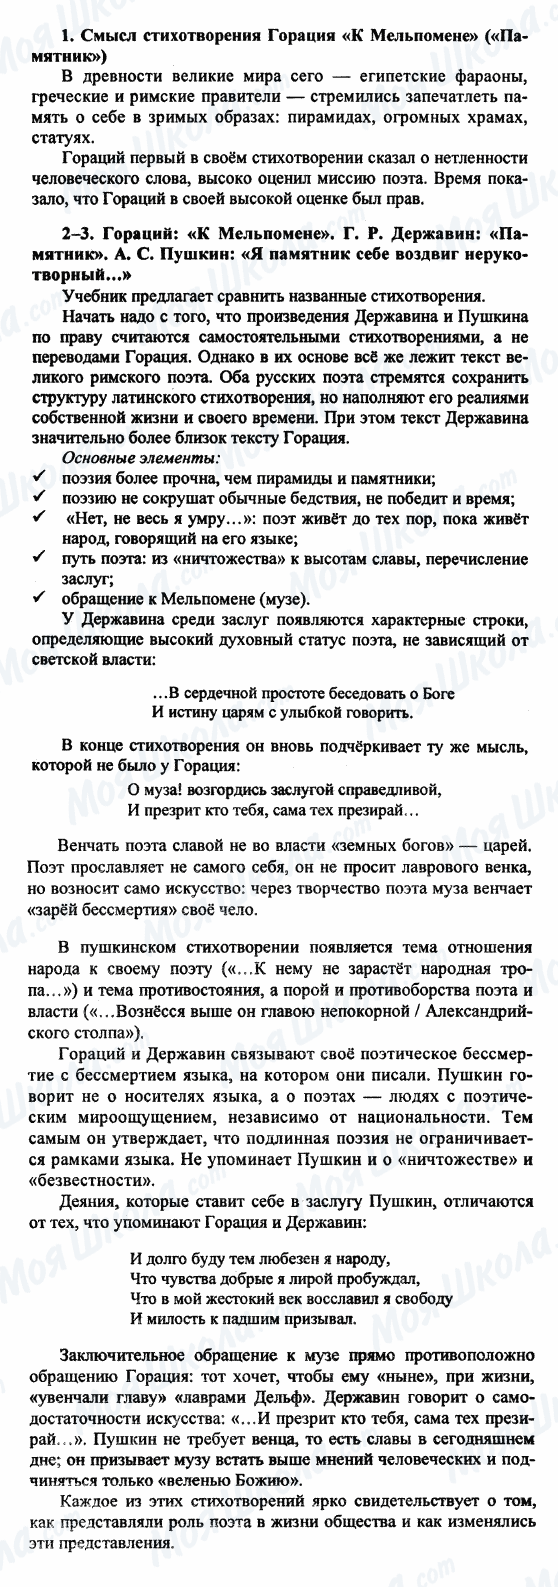 ГДЗ Русская литература 9 класс страница 1-2-3